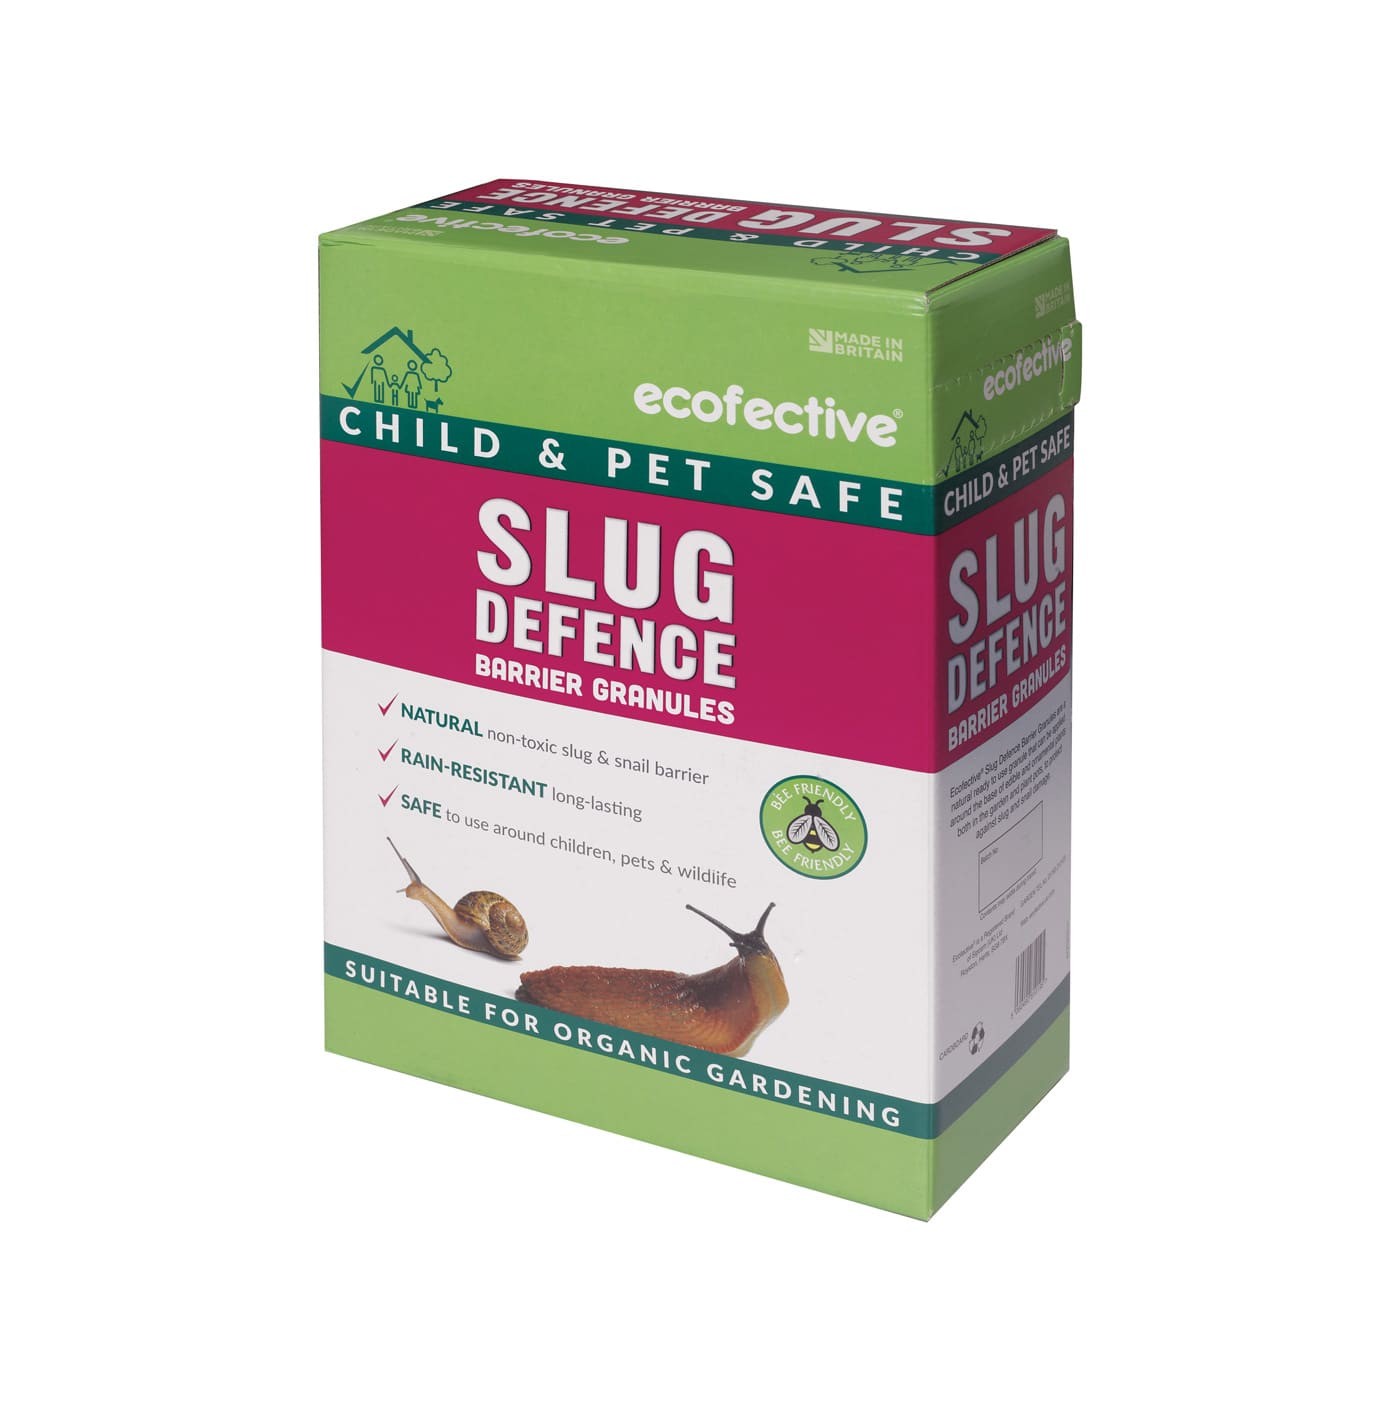 Ecofective Slug Defence Barrier Granules